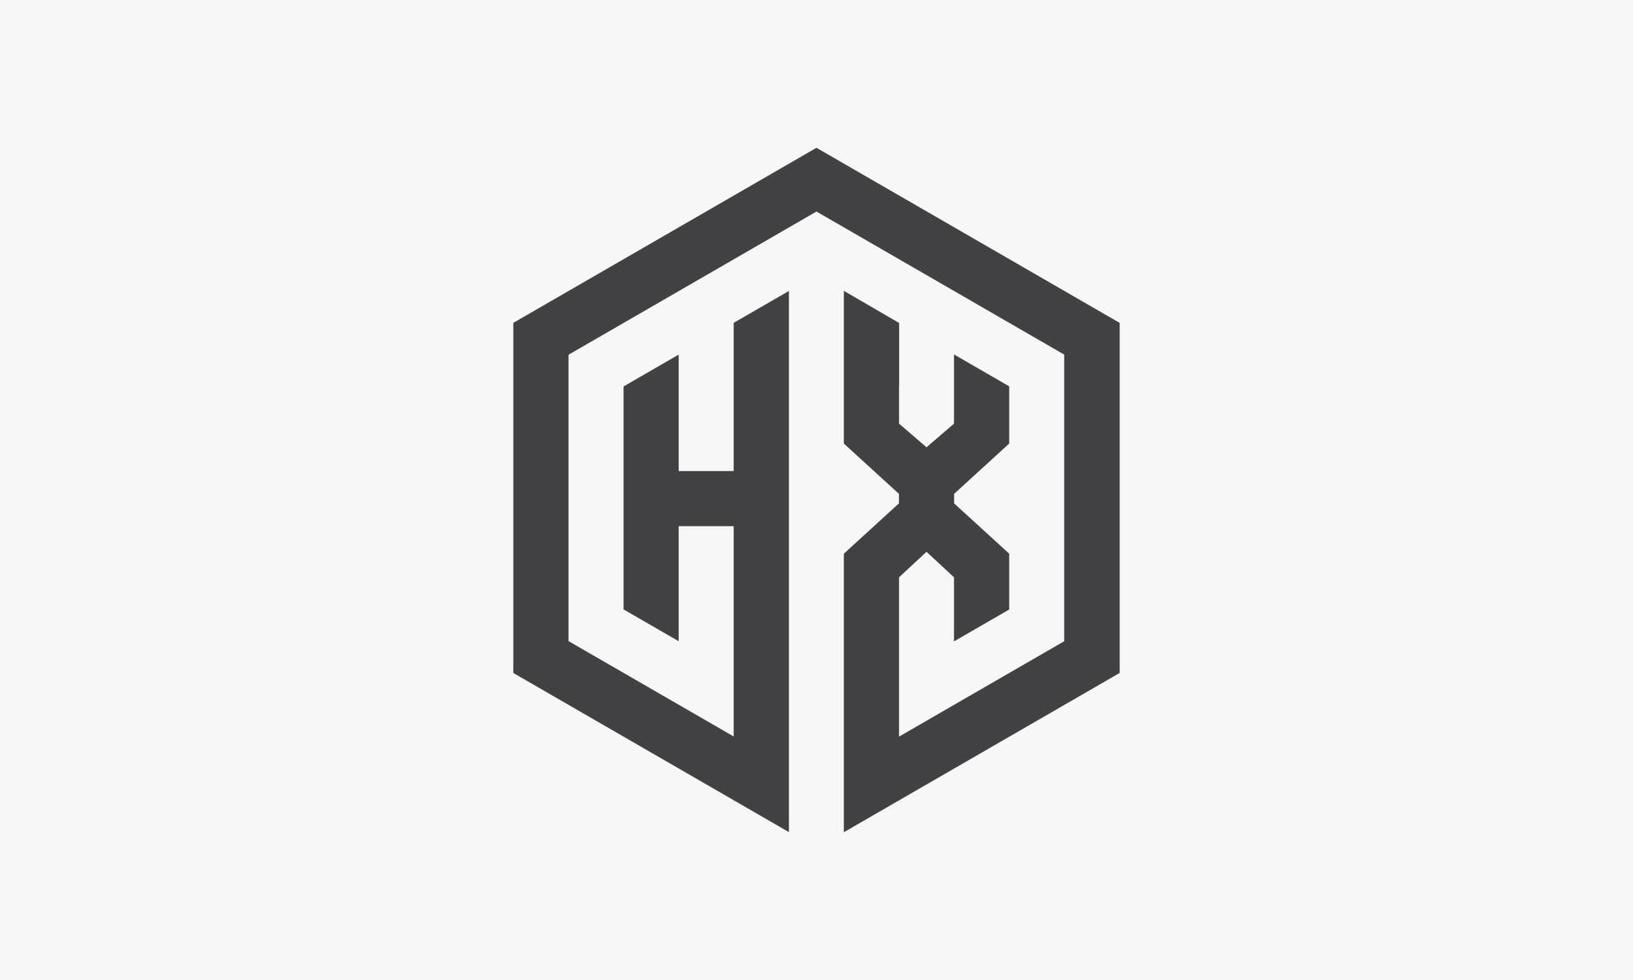 hx zeshoek brief logo geïsoleerd op een witte achtergrond. vector